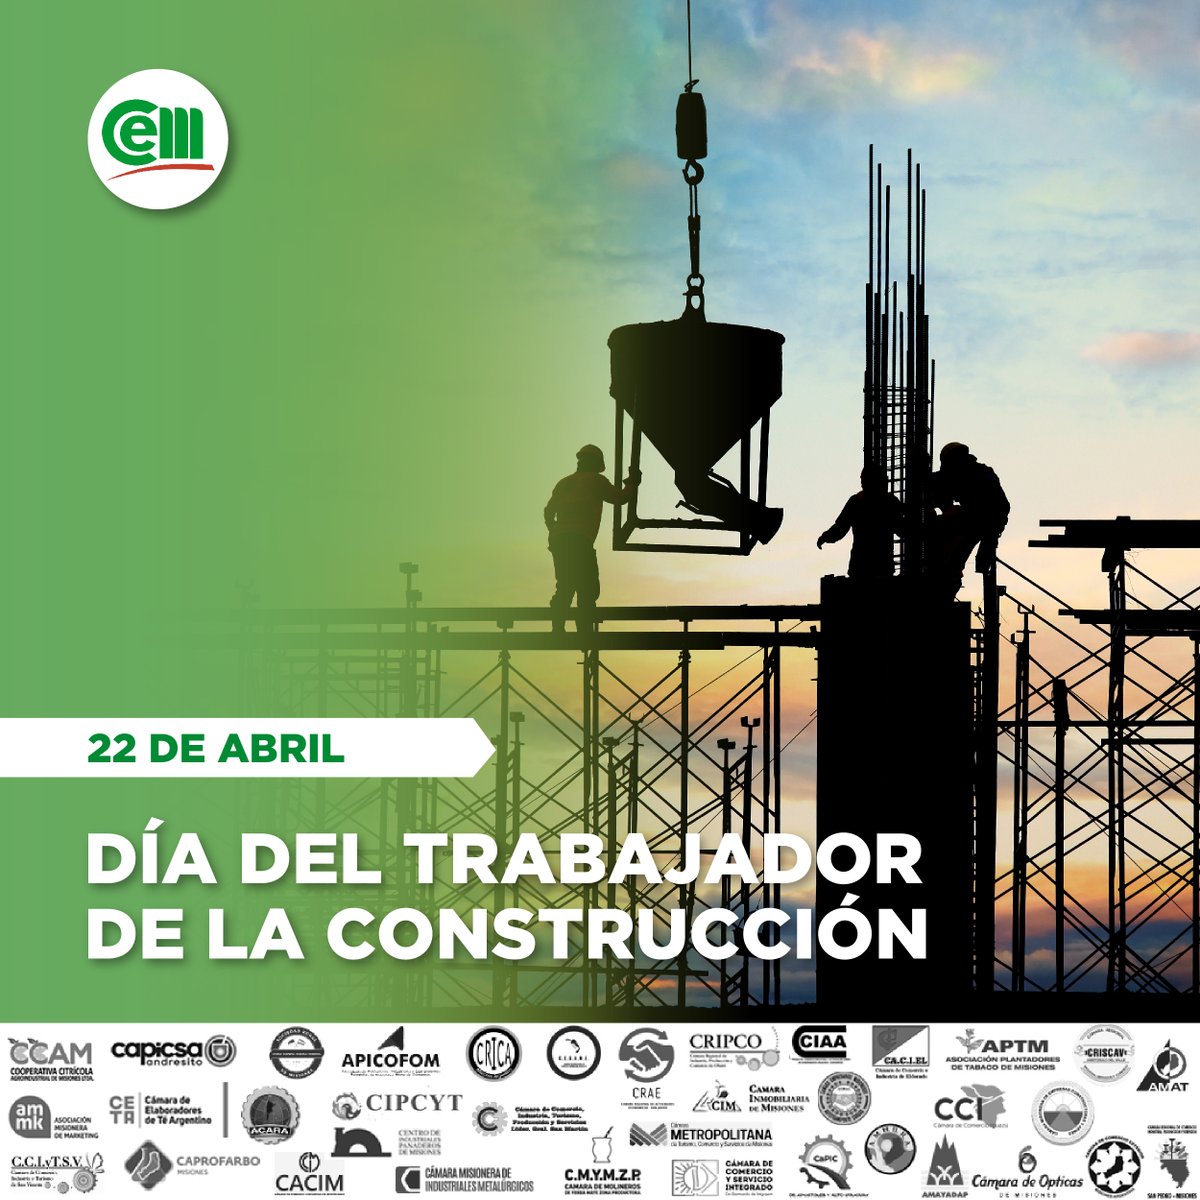 Construyendo sueños, levantando futuro.
¡Feliz Día del Trabajador de la Construcción! 🏗️💪

#DíaDelTrabajadorDeLaConstrucción #ConstruyendoElFuturo